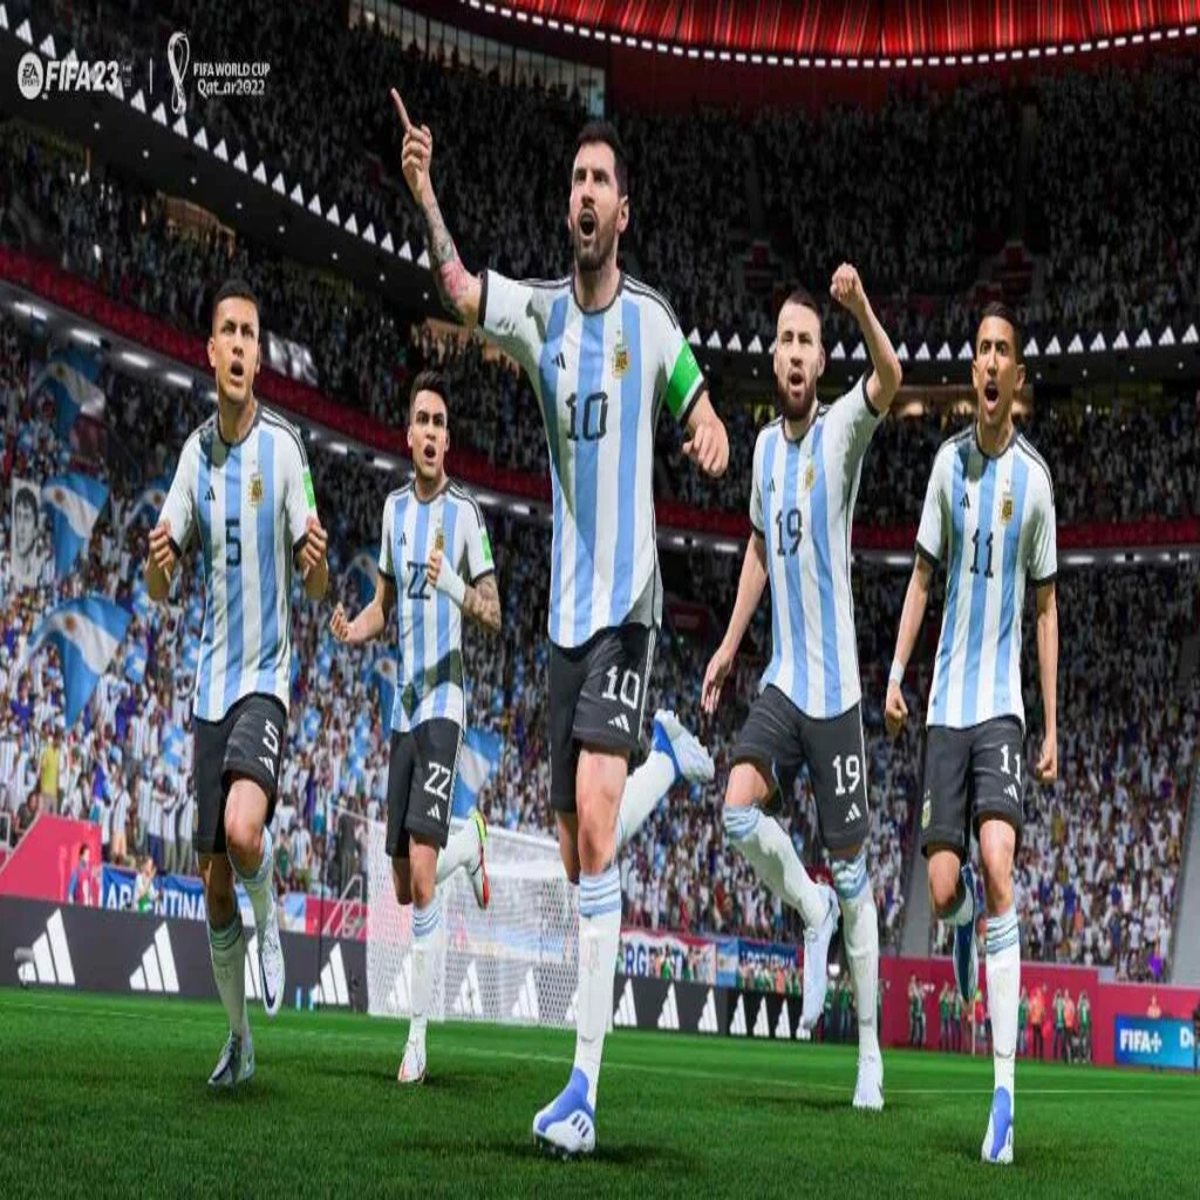 FIFA é removido das lojas digitais - Adrenaline